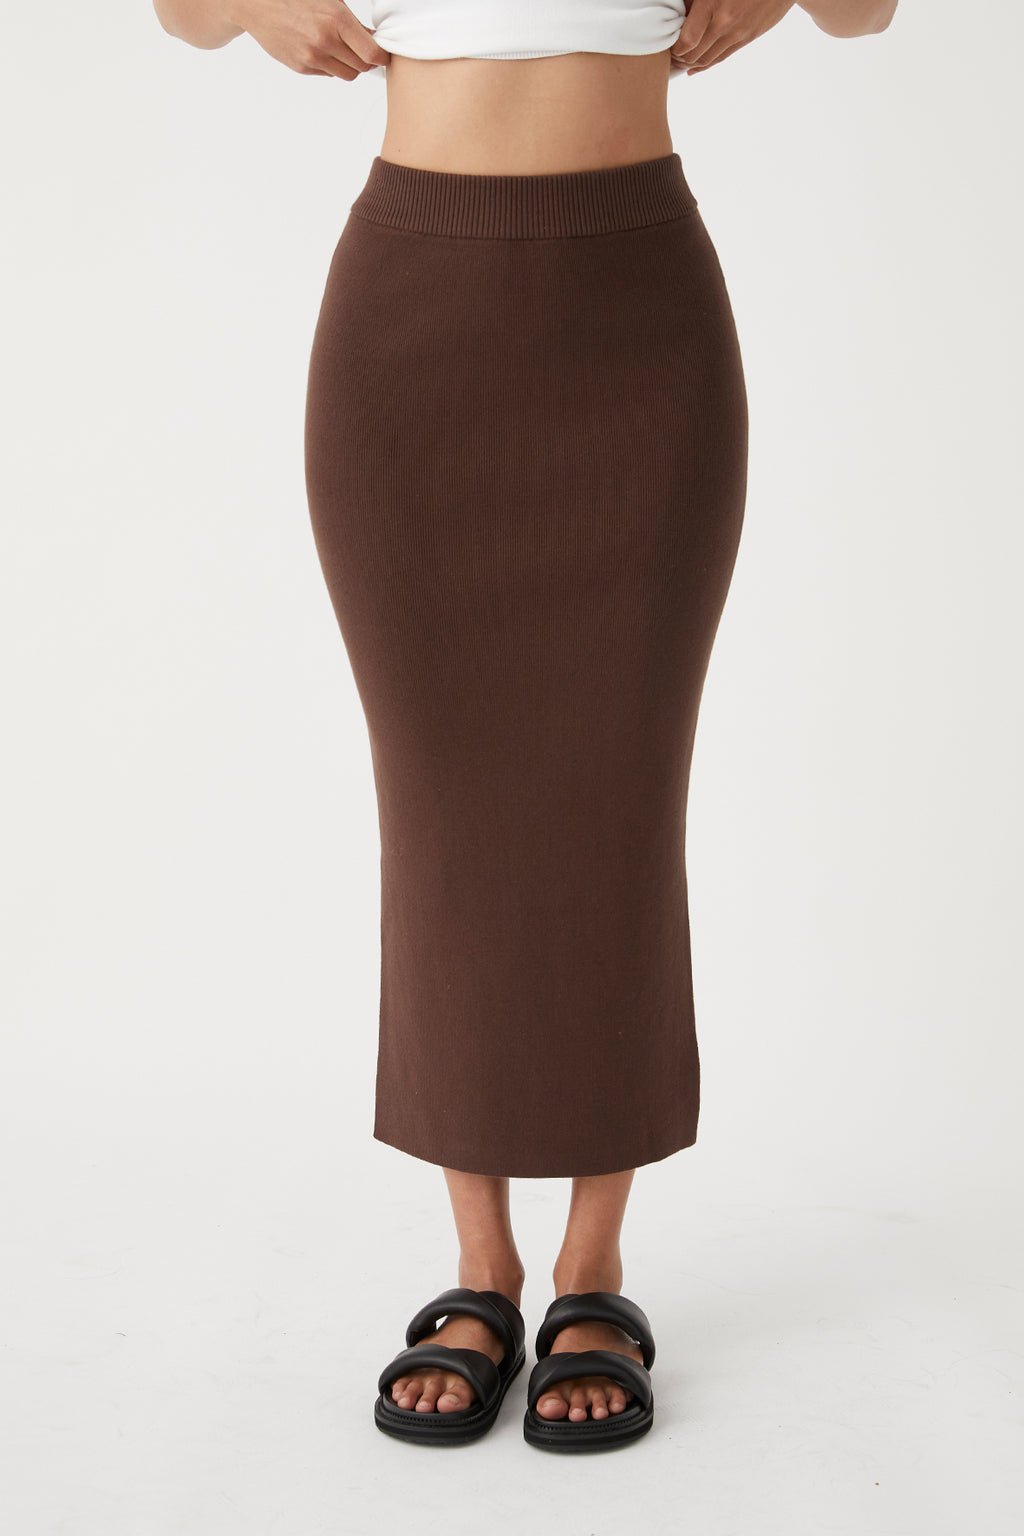 Harper Organic Knit Skirt - Chocolate